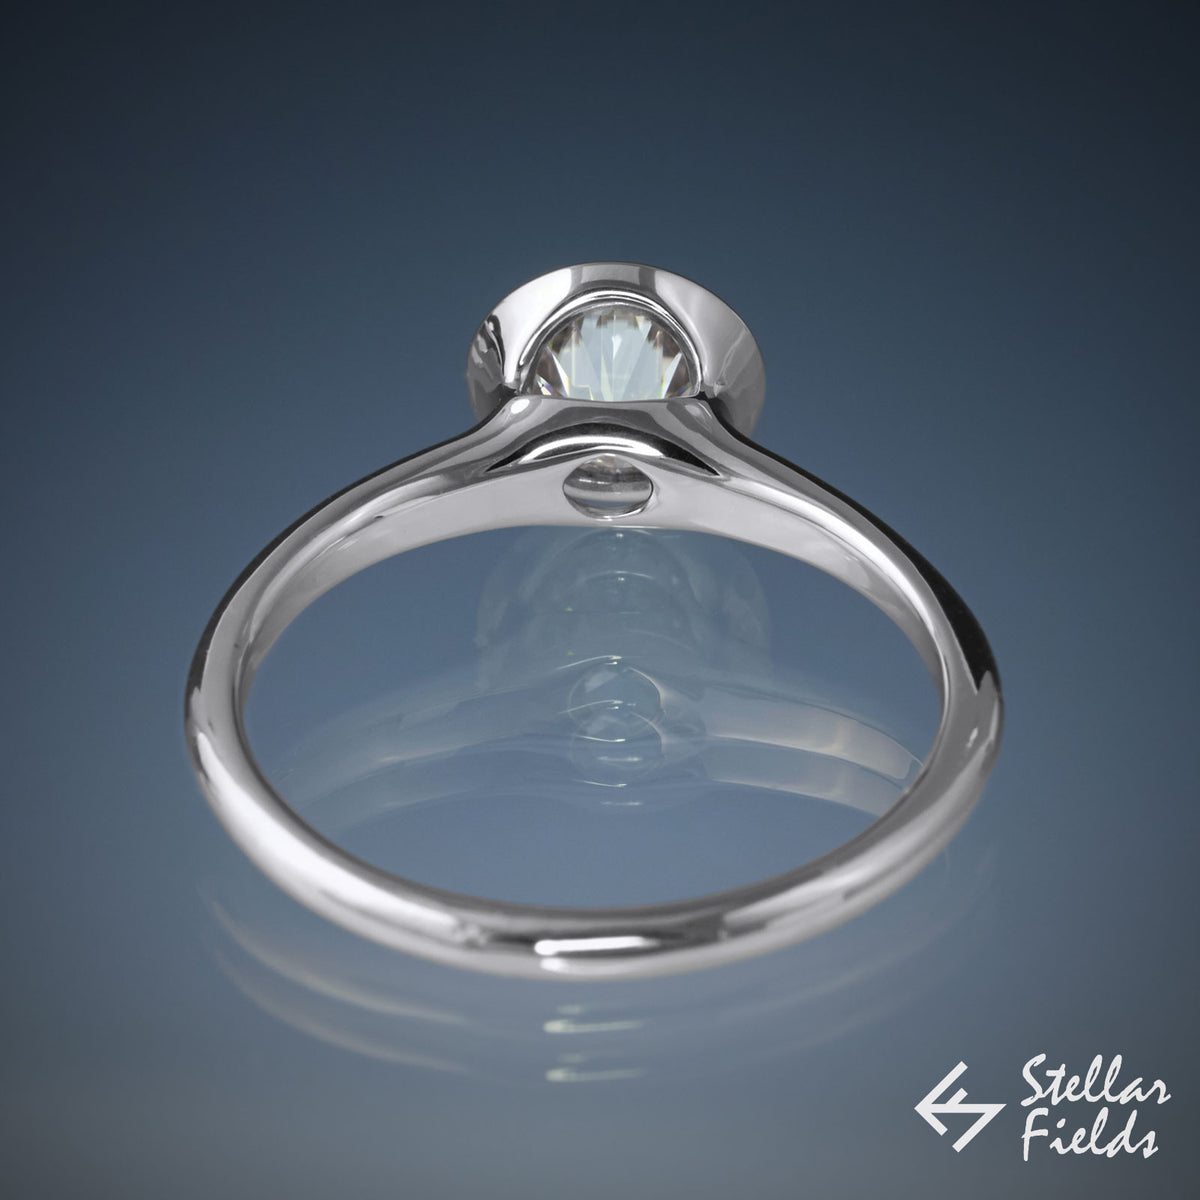 1ct 6.5mm Forever One™ Moissanite Full Bezel Set Engagement Ring - Stellar Fields